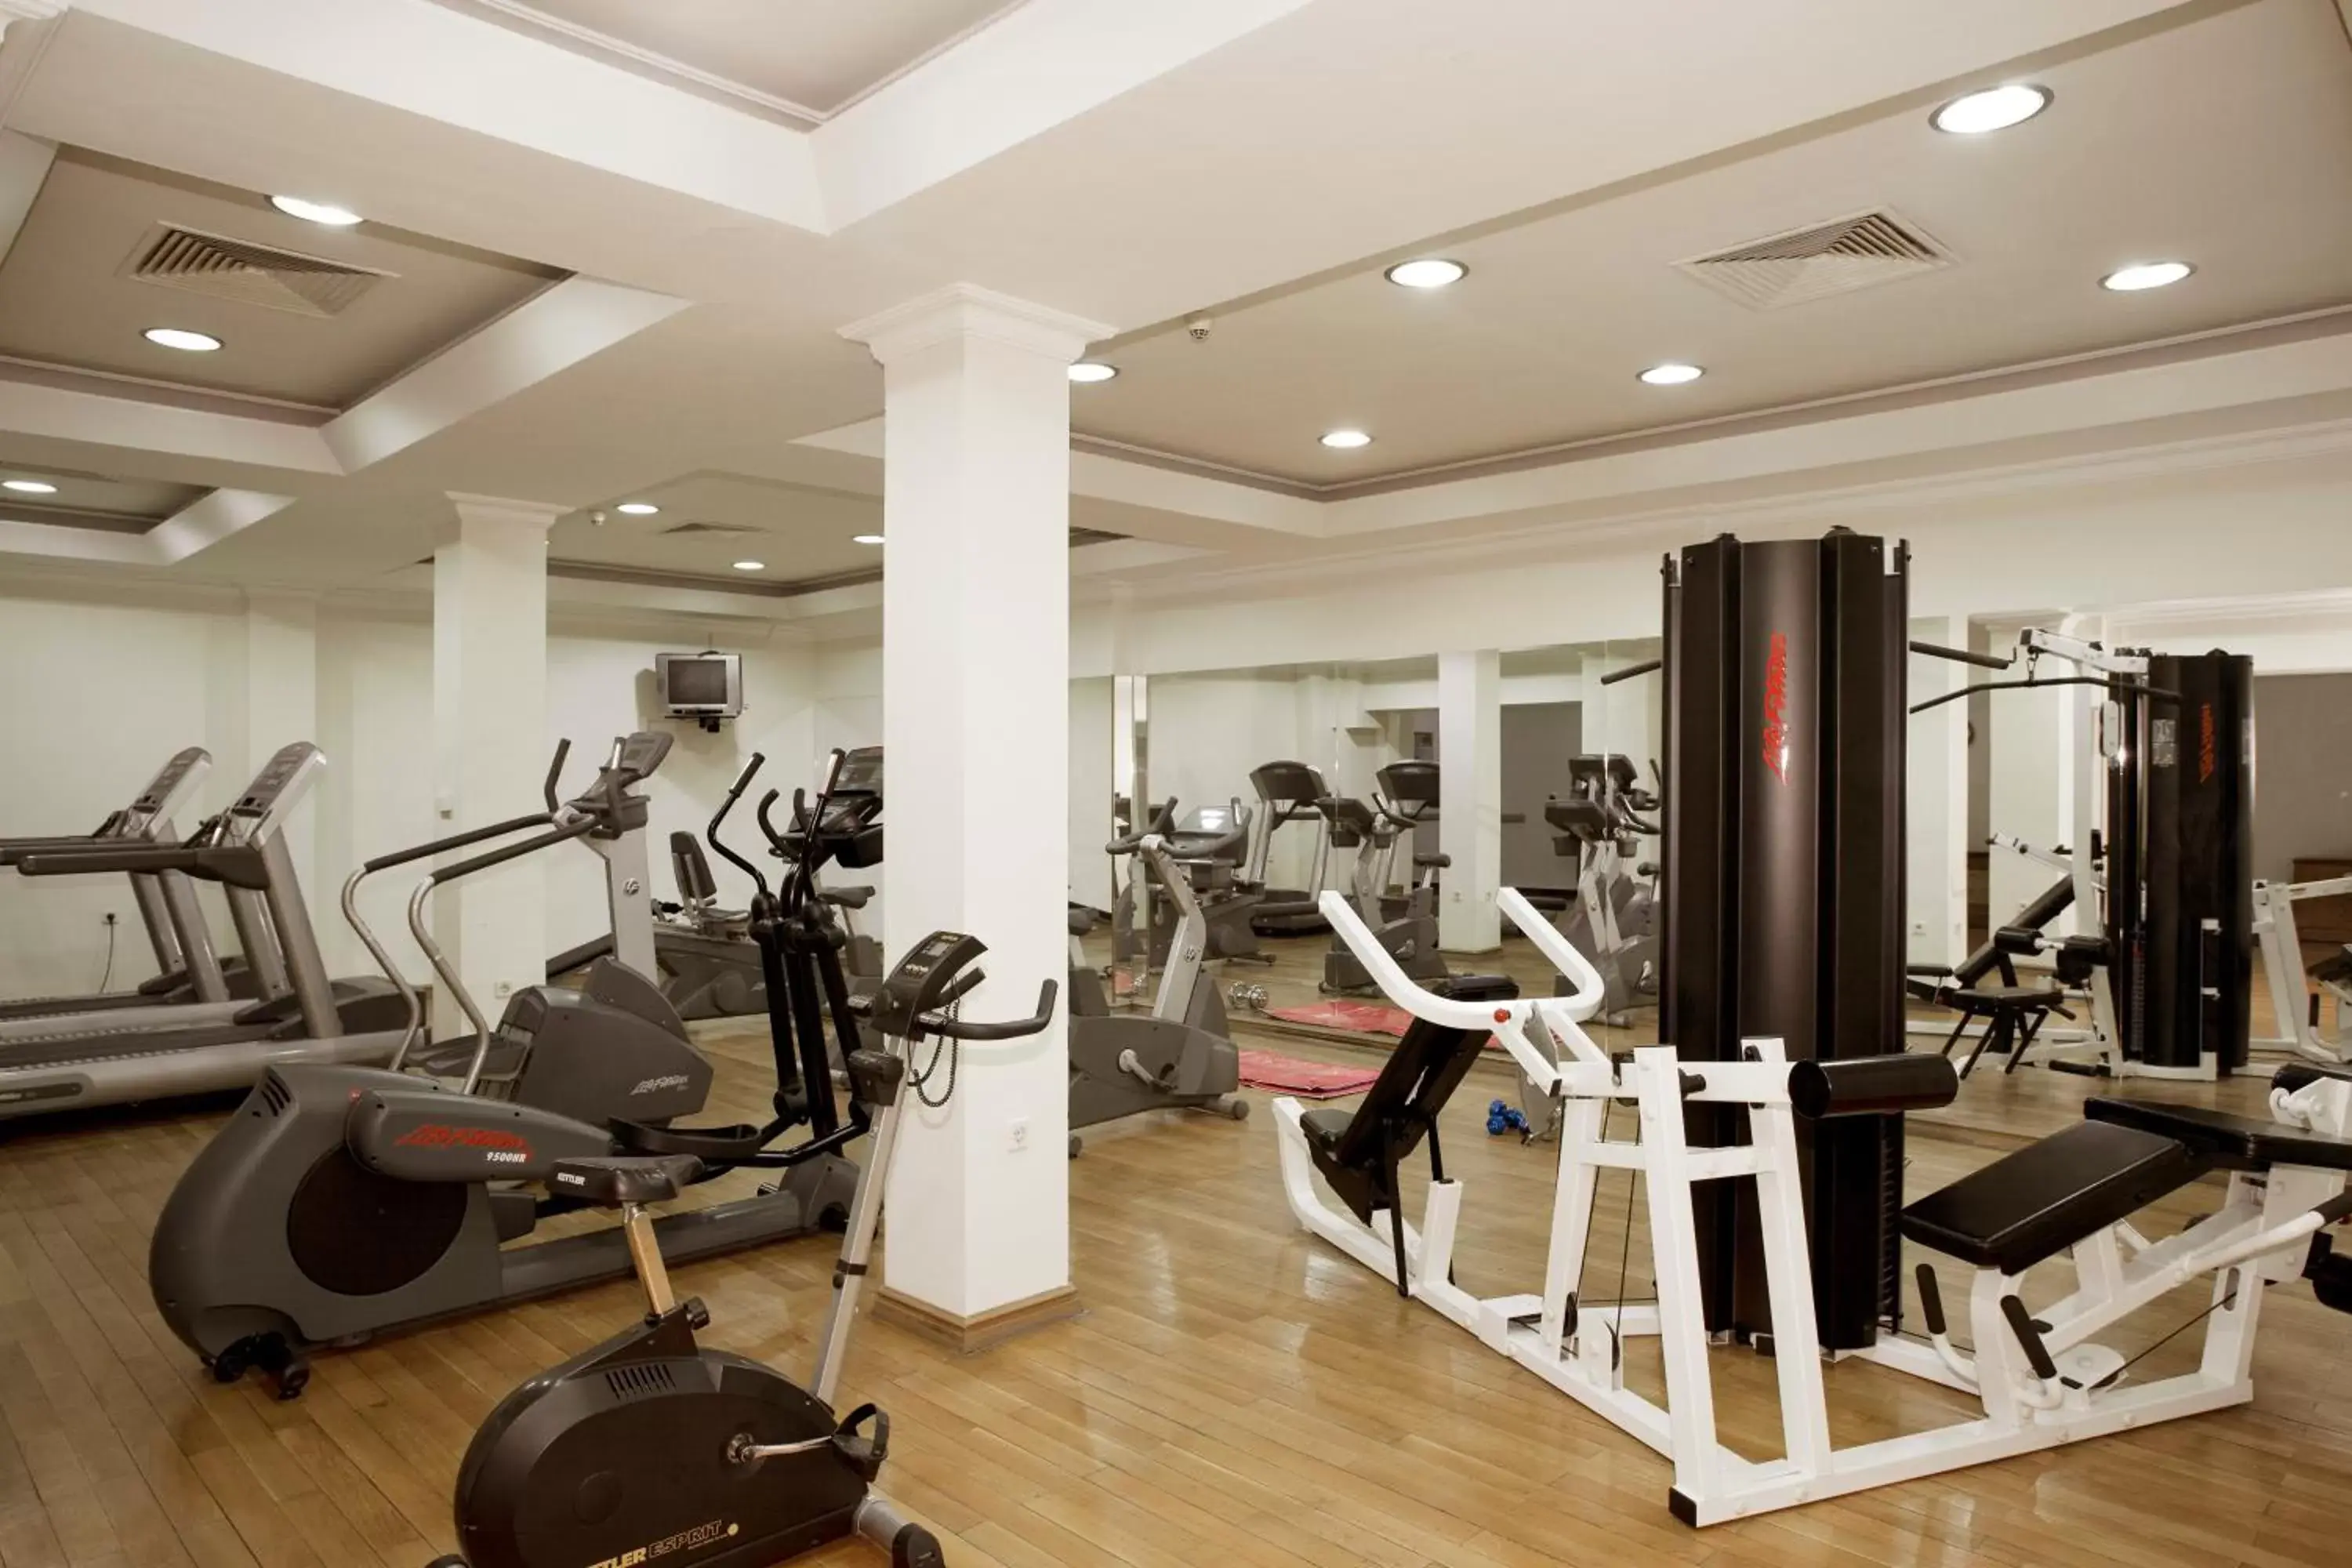 Fitness centre/facilities, Fitness Center/Facilities in Ramada Plovdiv Trimontium